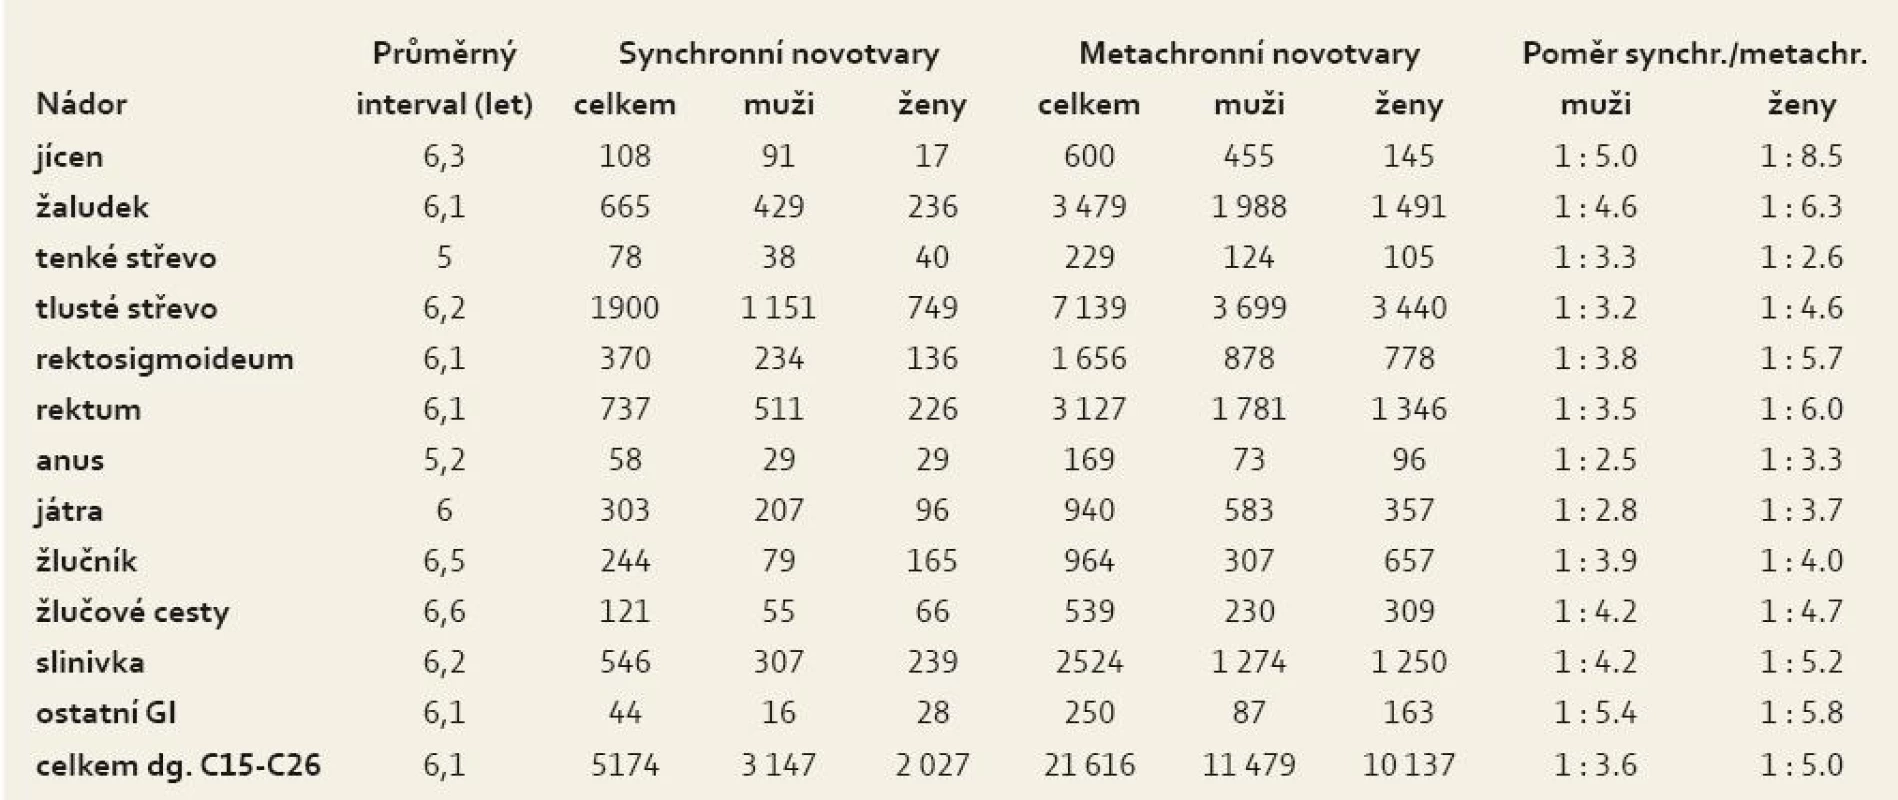 Průměrný interval a poměr následných novotvarů u nemocných s 14 744 primárními nádory Gi.
Tab. 4. Average interval and proportion of subsequent neoplasms in patients with 14,744 primary GI cancers.